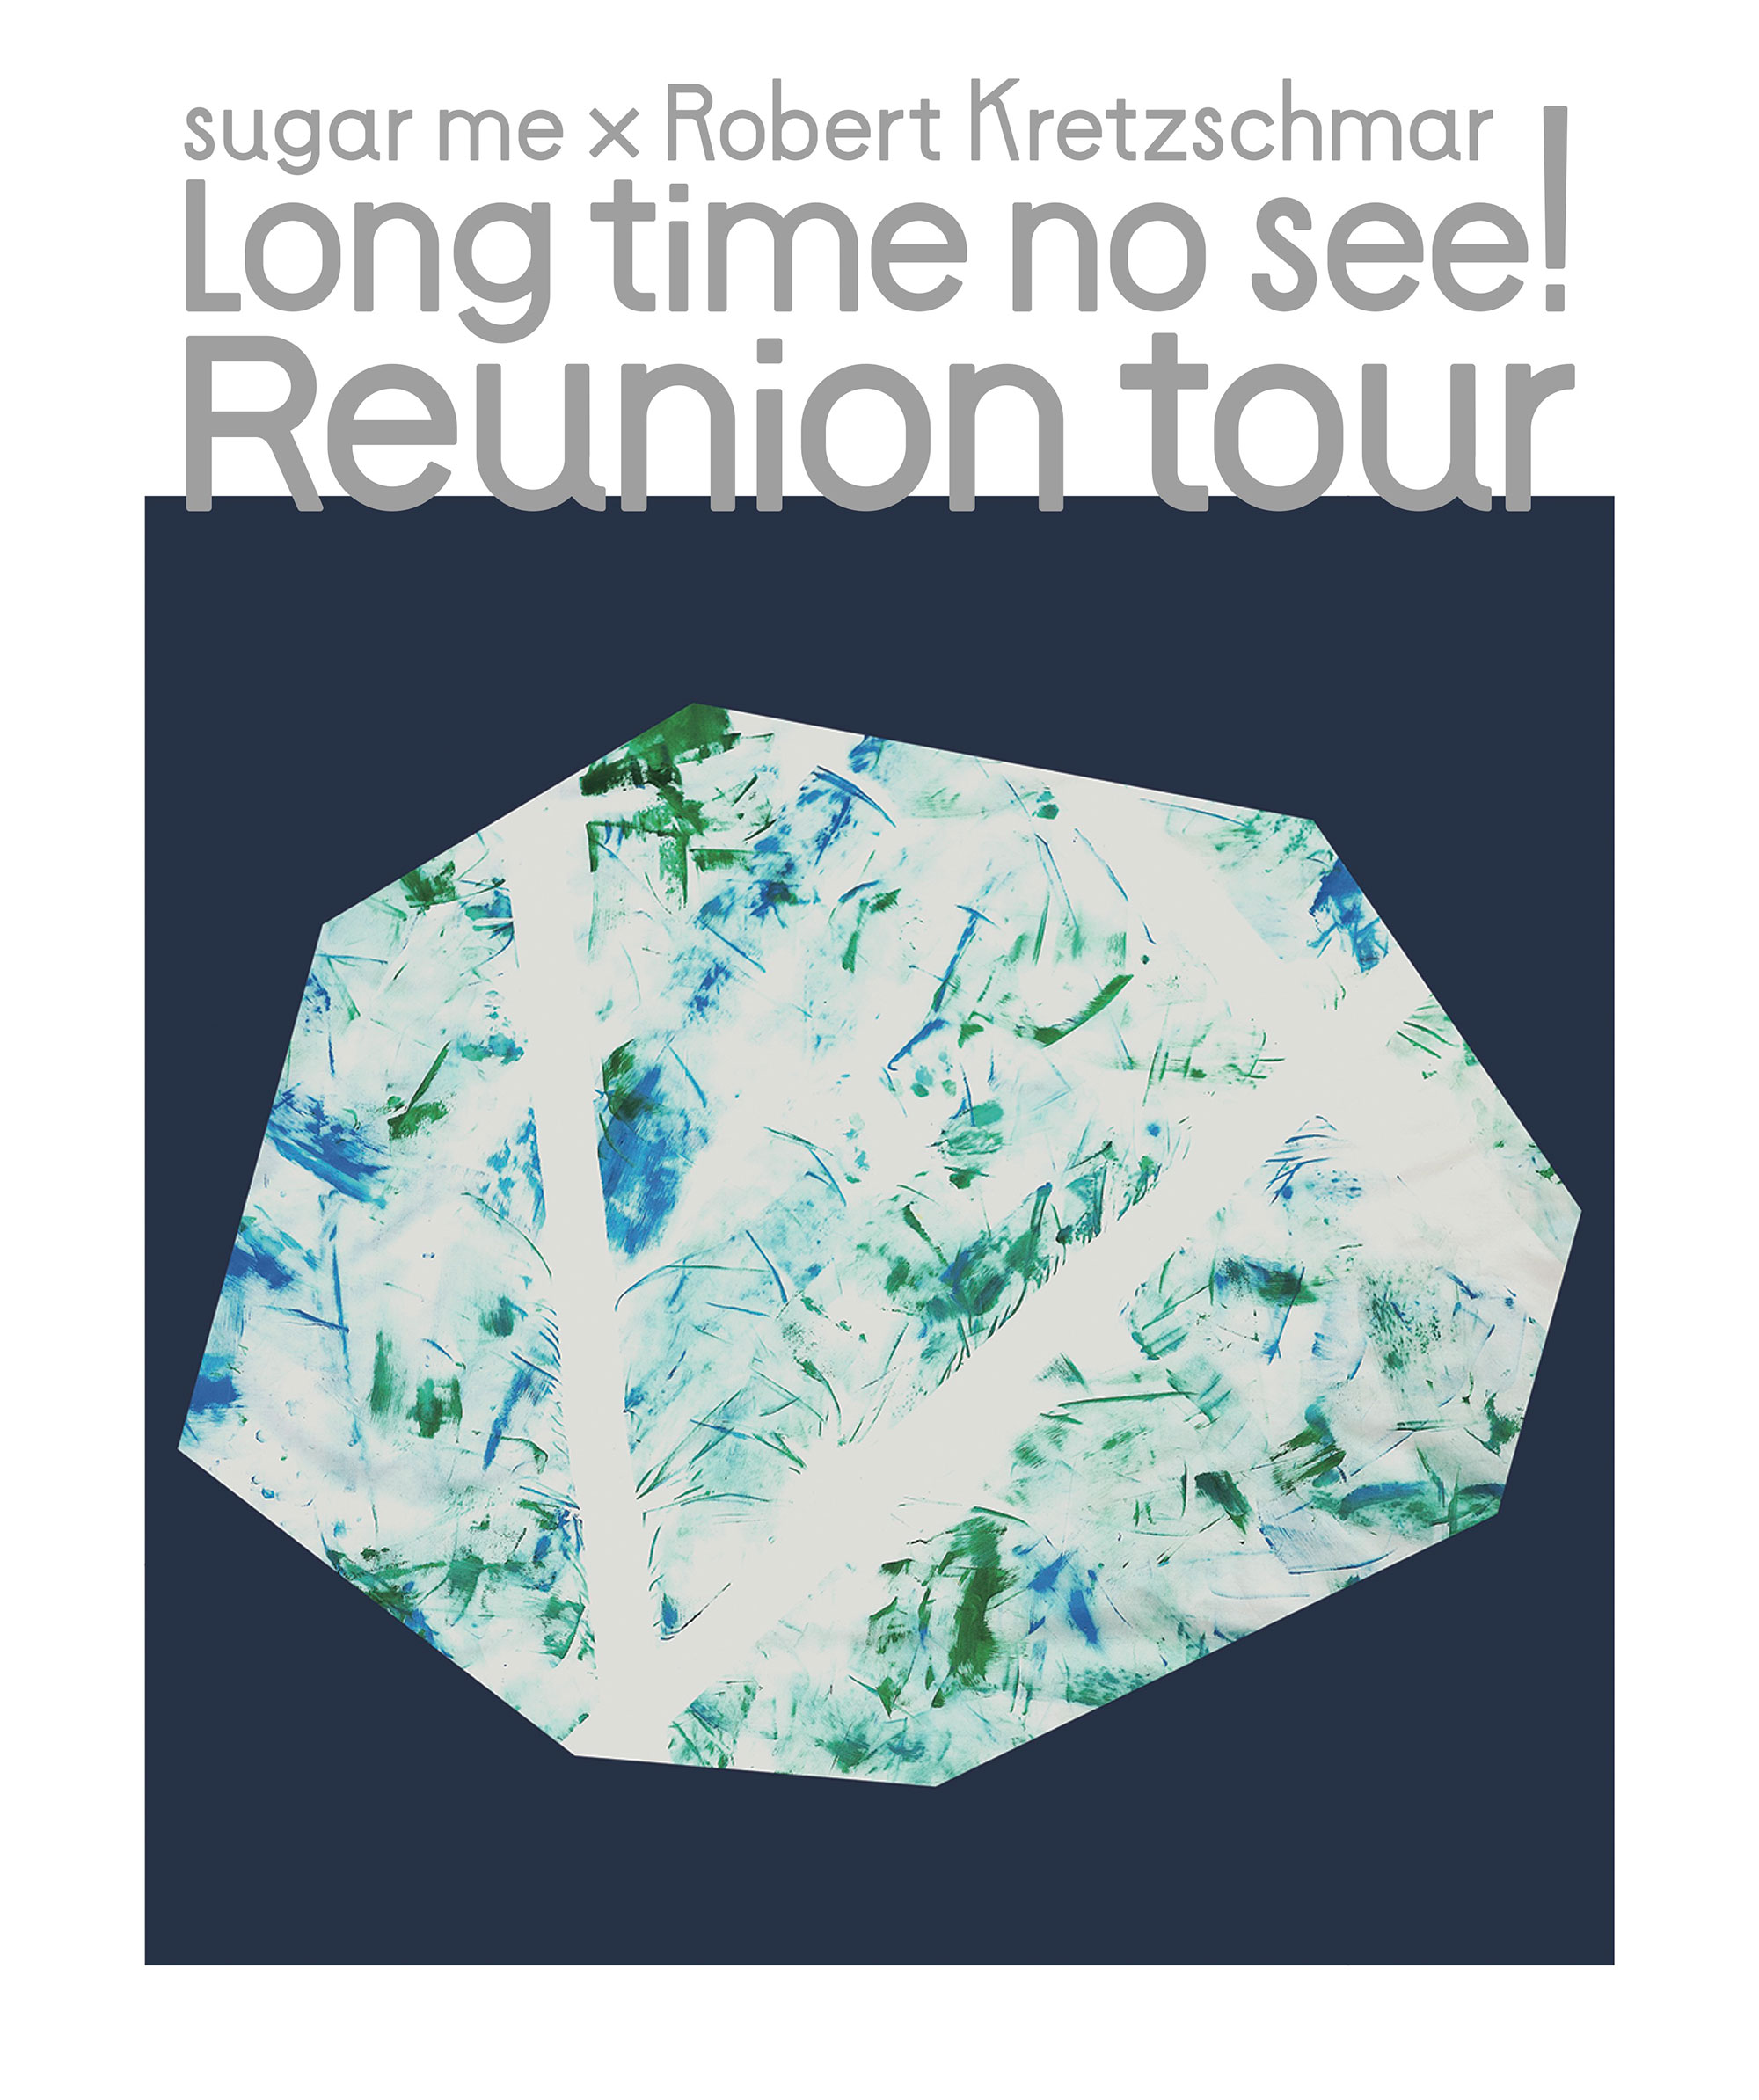 reunion-tour